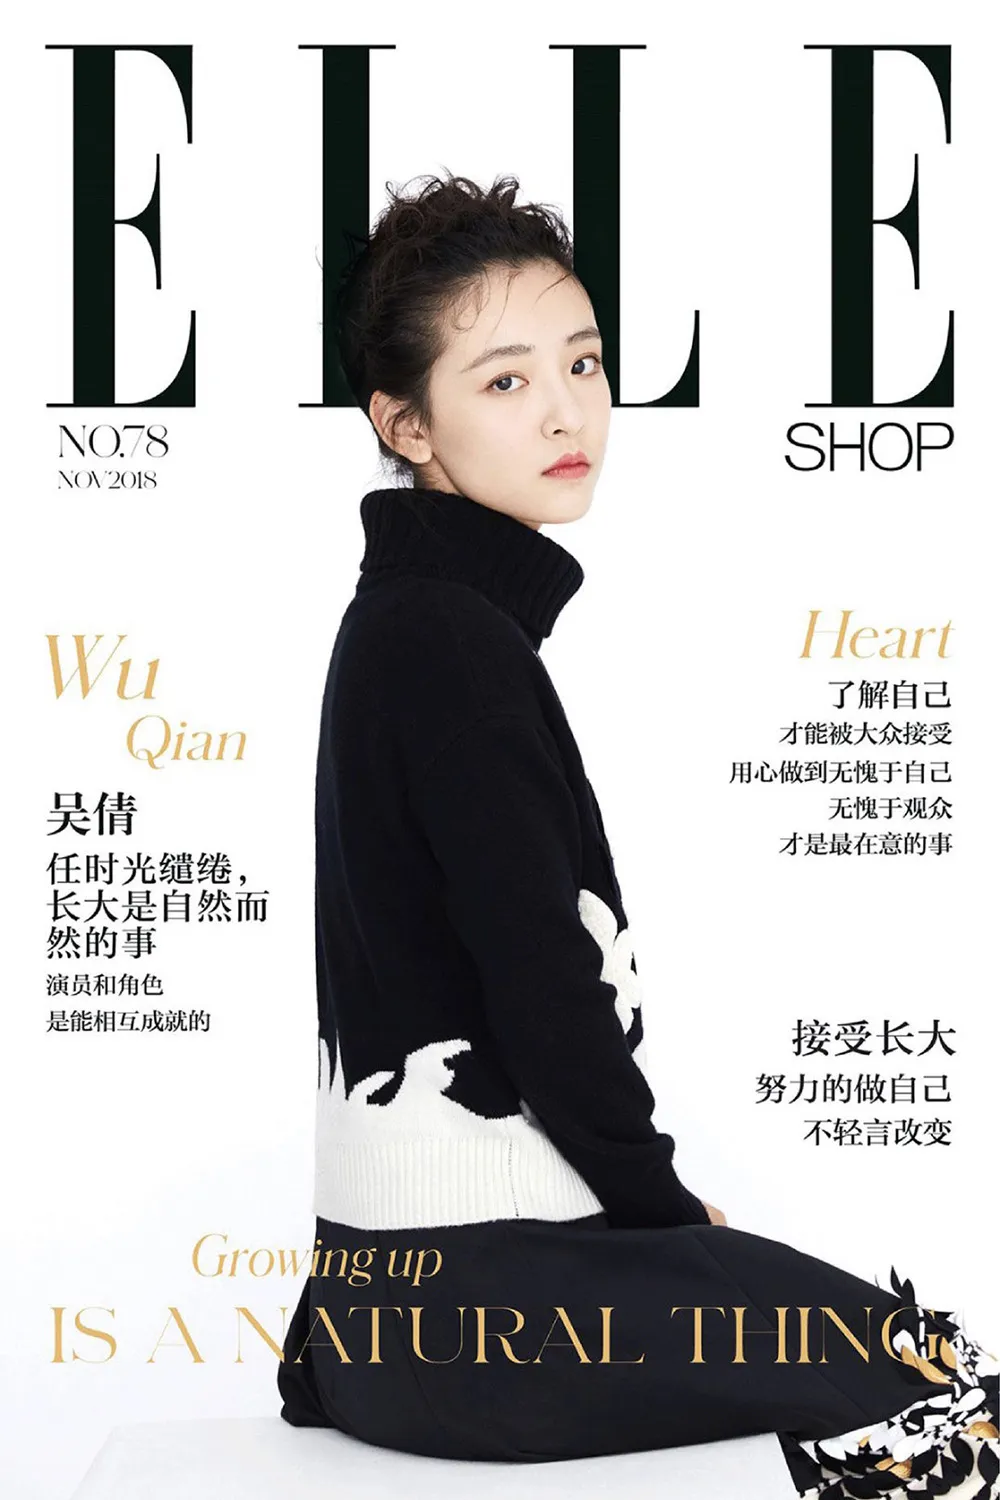 Wu Qian (actress) large cover. JPG